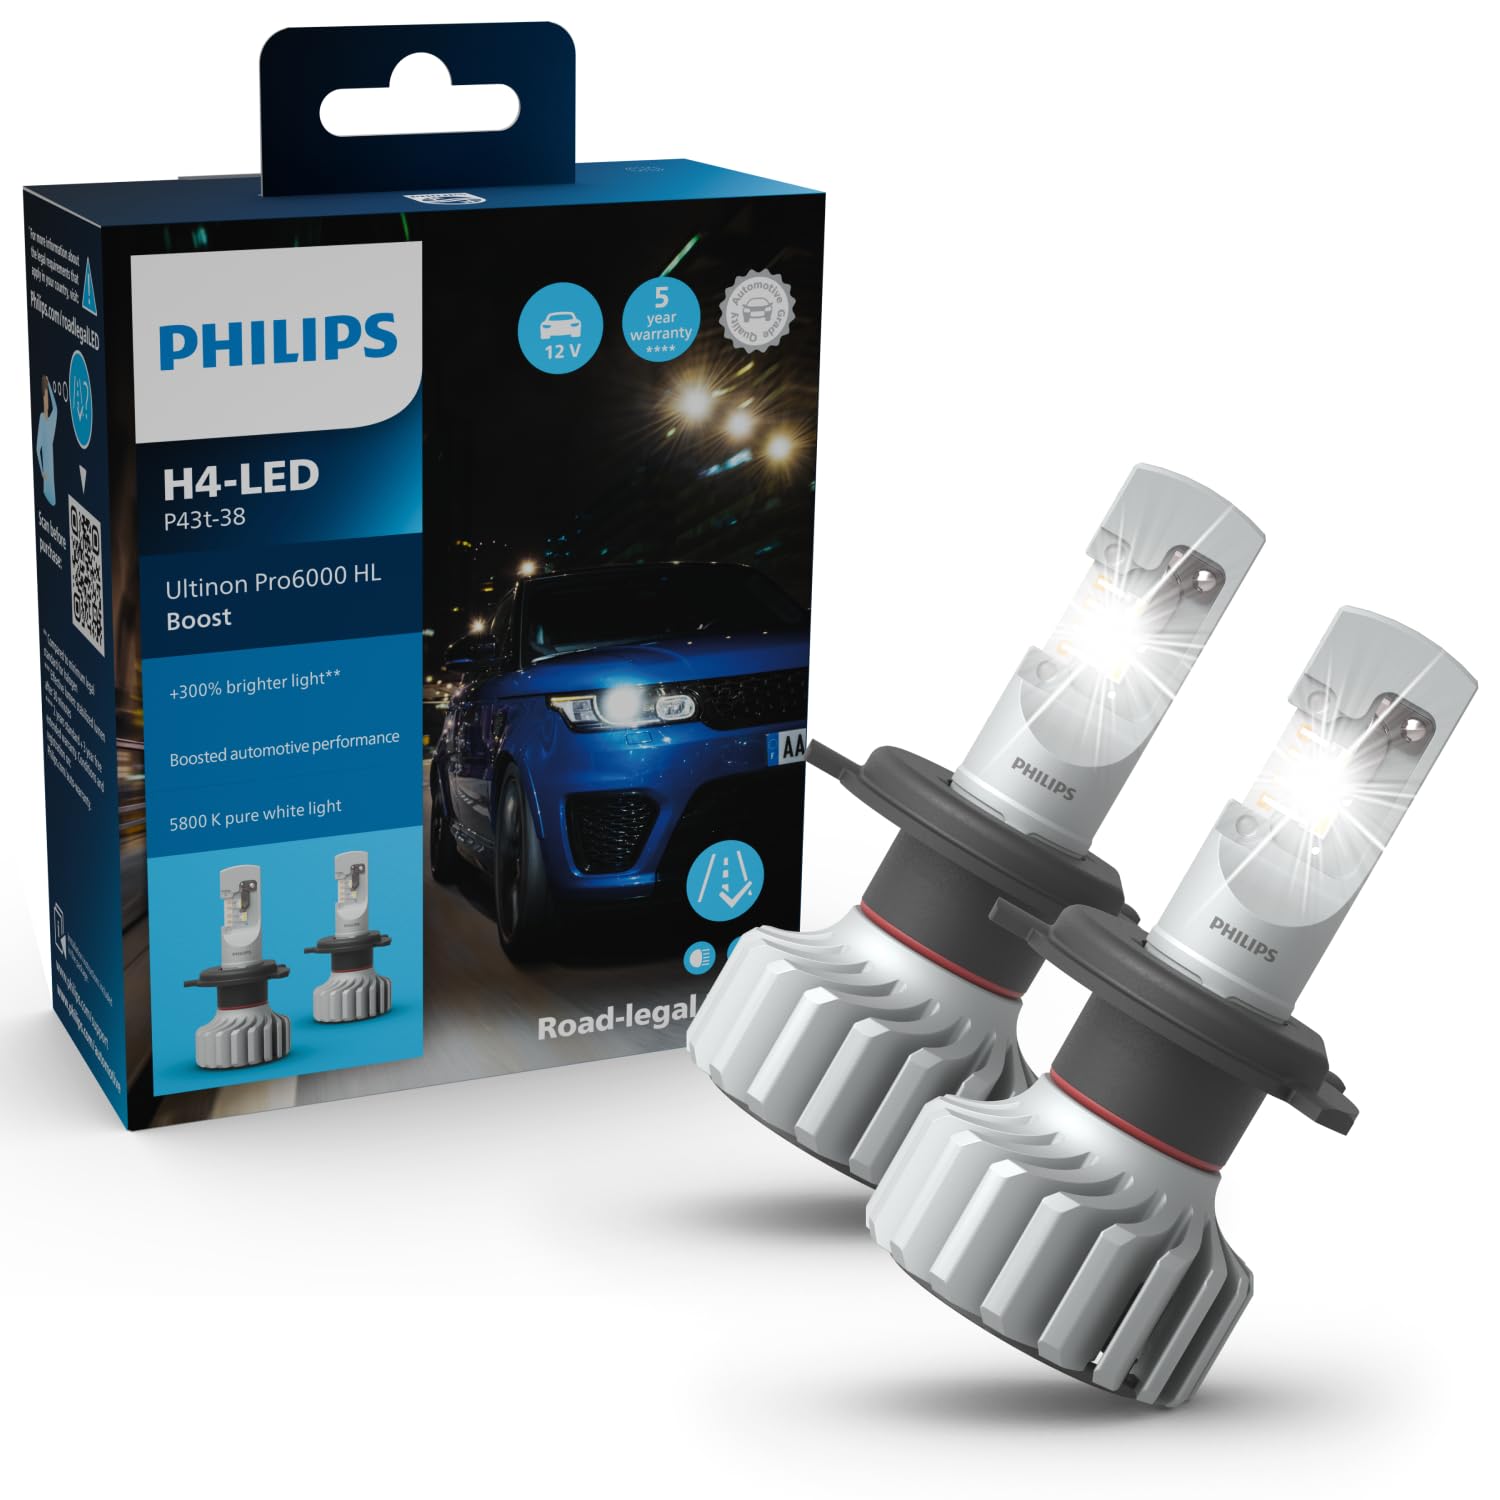 Philips Ultinon Pro6000 Boost H4-LED Scheinwerferlampe mit Straßenzulassung*, 300% helleres Licht** von Philips automotive lighting